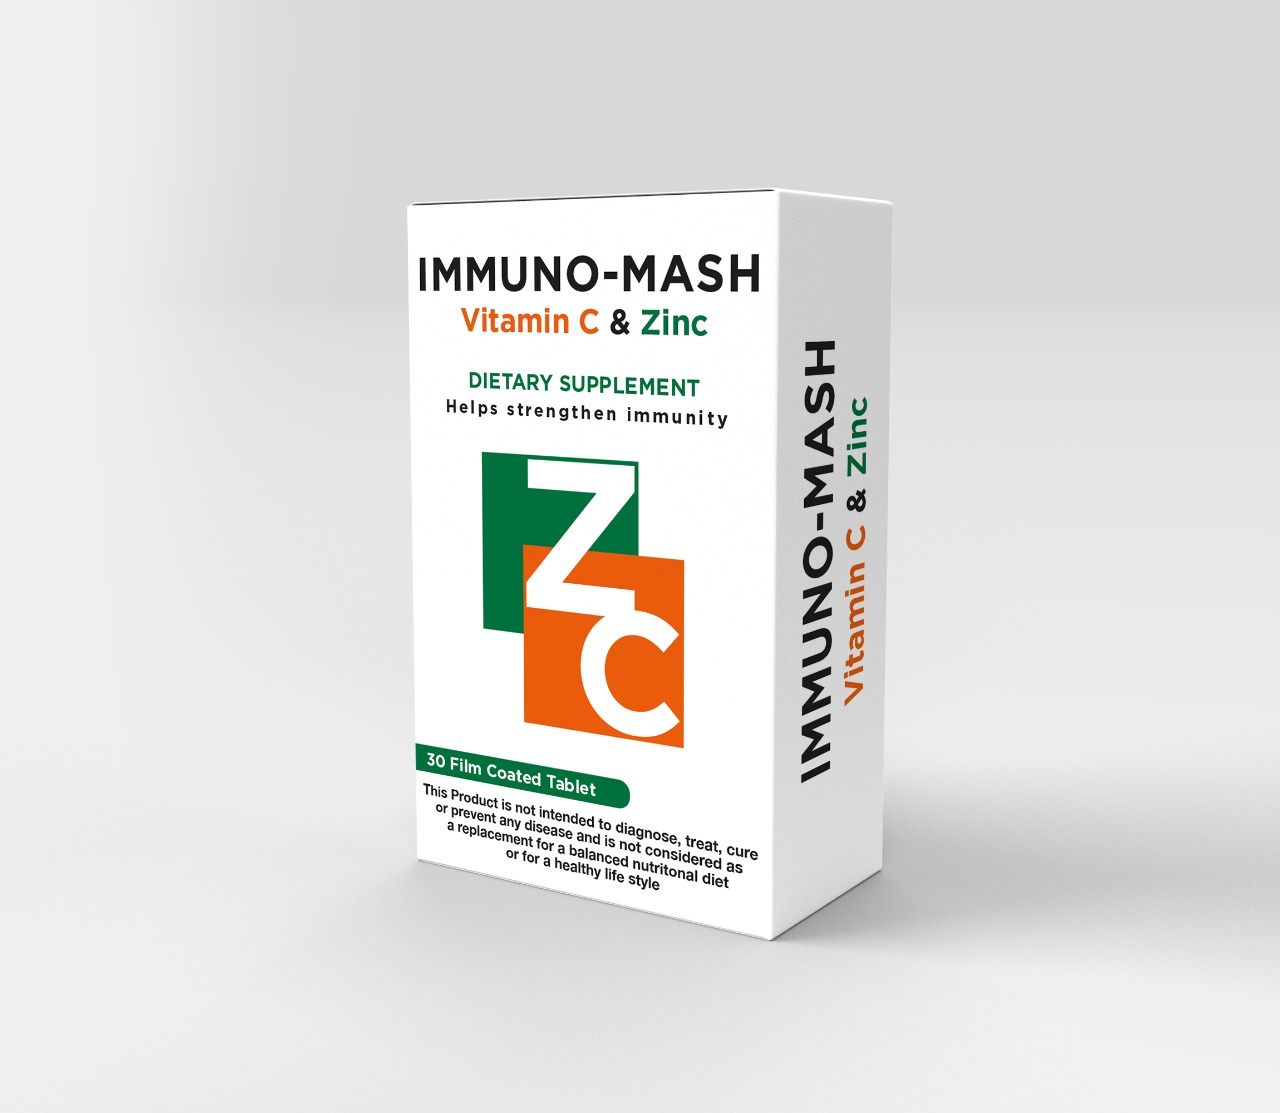 دواعي استعمال أميونوماش IMMUNO MASH فيتامين سي وزنك السعر والجرعة والآثار الجانبية ‎